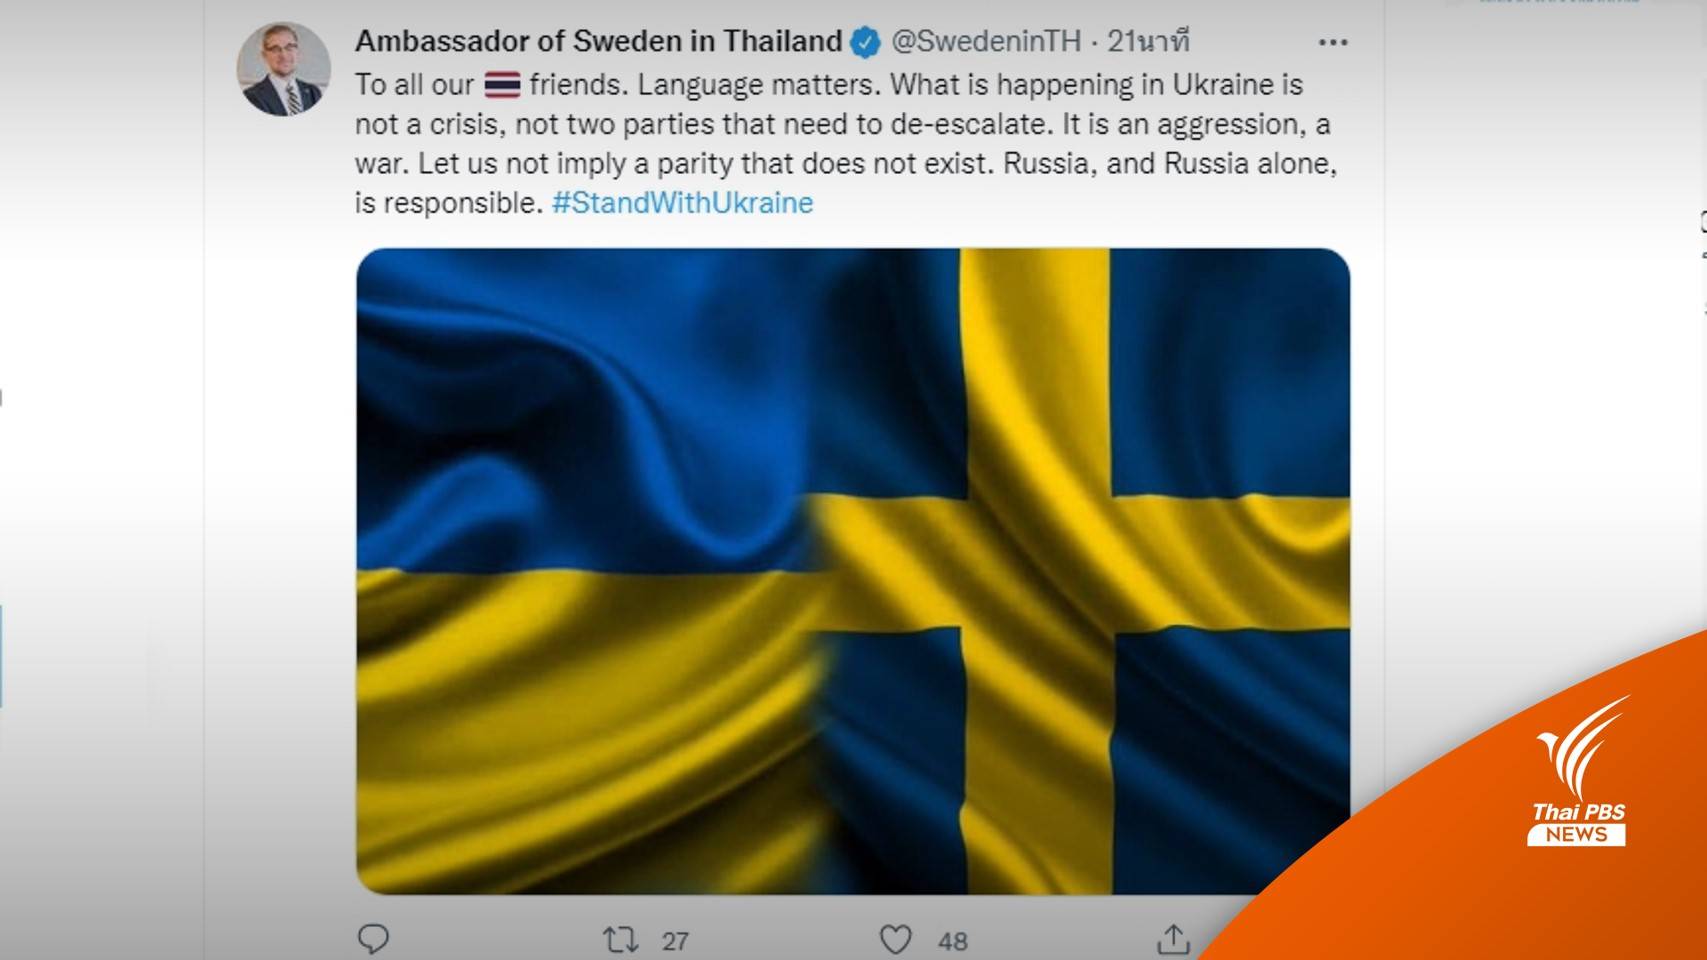  ทูตสวีเดนโพสต์ทวิตชี้ รัสเซียต้องรับผิดชอบ ปมขัดแย้ง "รัสเซีย-ยูเครน" 